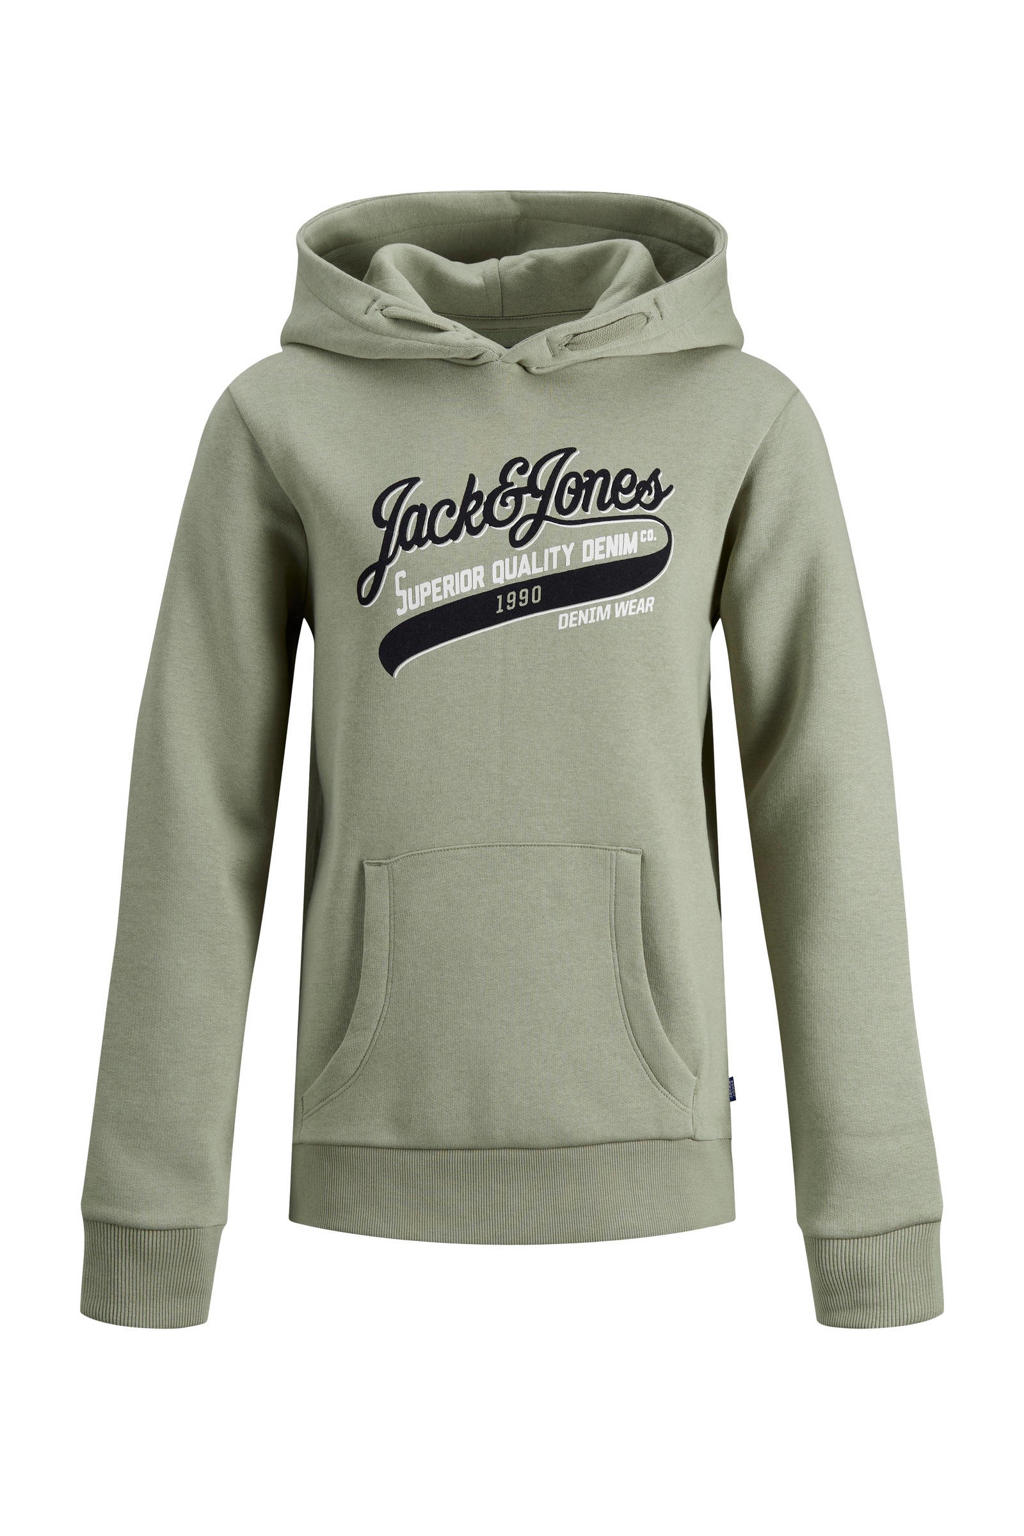 Olijfgroene jongens JACK & JONES JUNIOR hoodie van sweat materiaal met logo dessin, lange mouwen, capuchon en geribde boorden